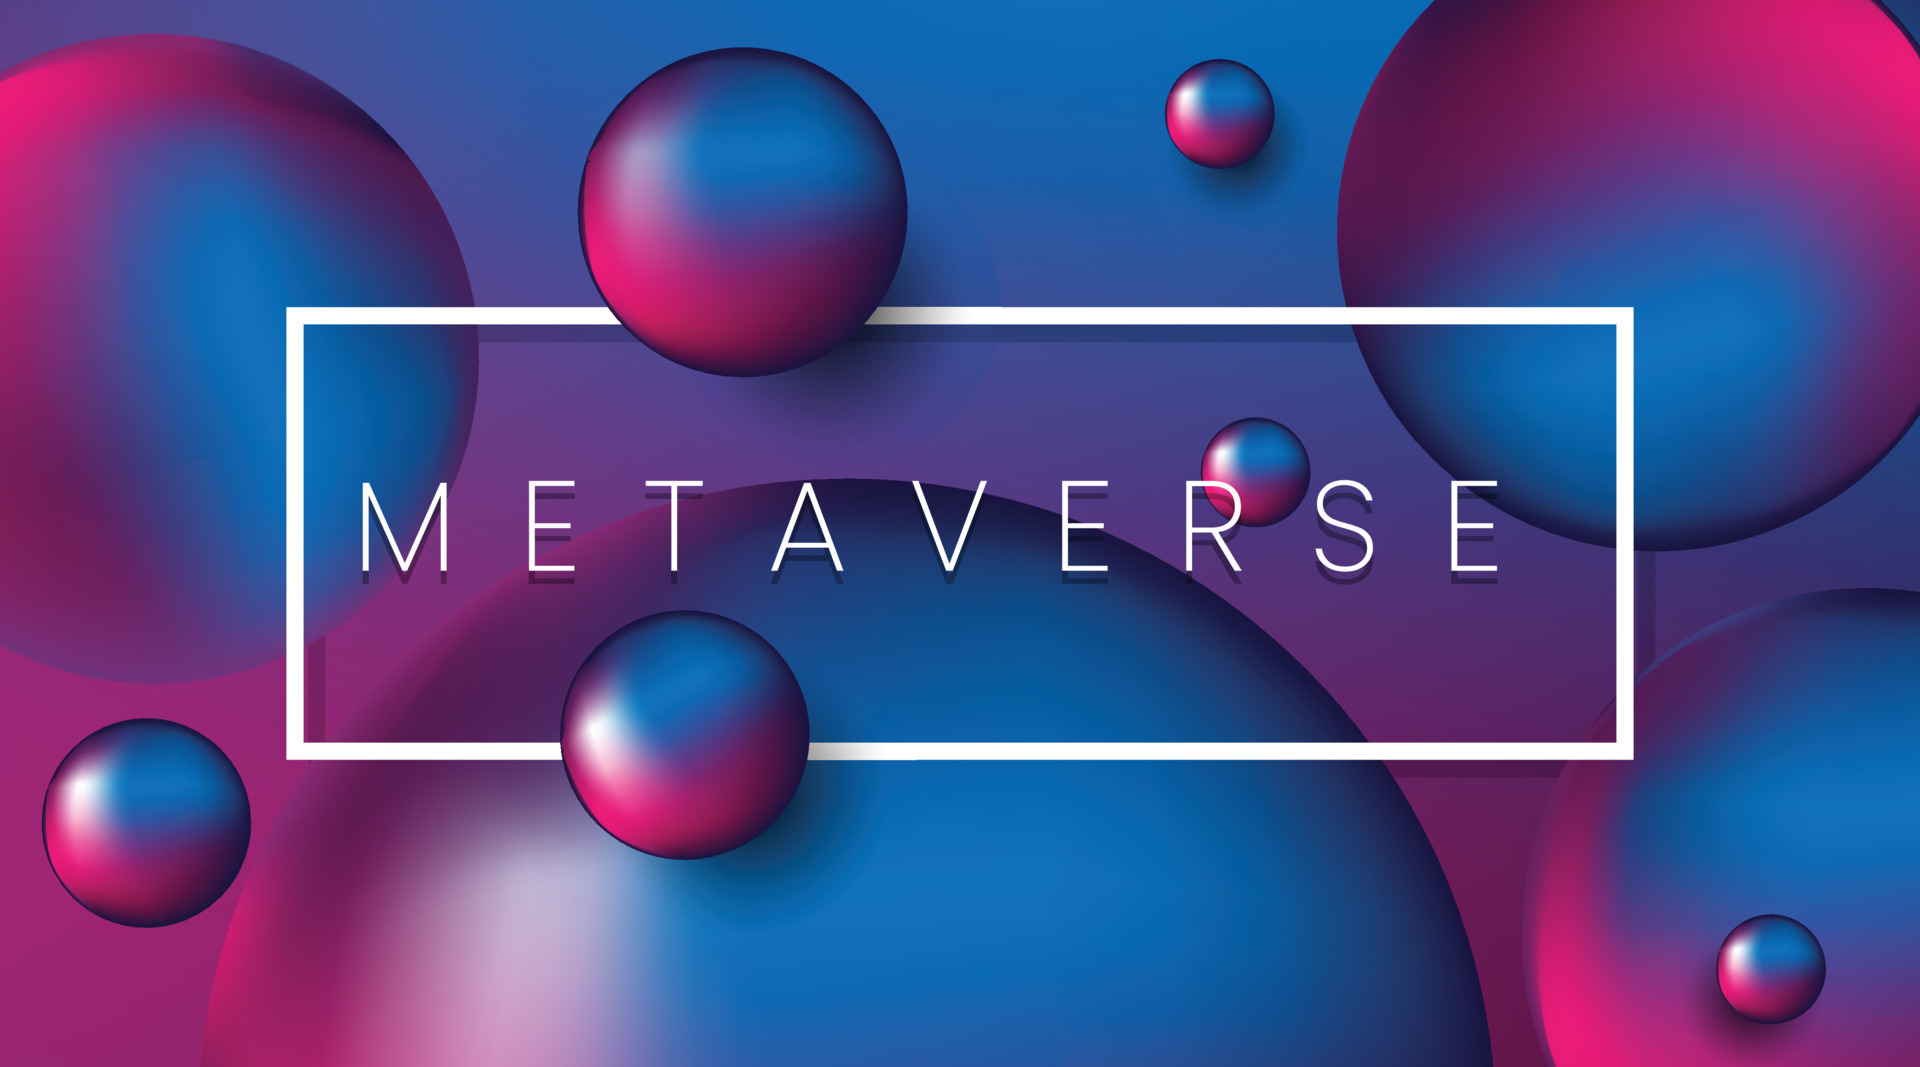 这张图片展示了多个漂浮的三维球体，背景是蓝紫渐变色，正中有个带有“METAVERSE”字样的白色矩形框。